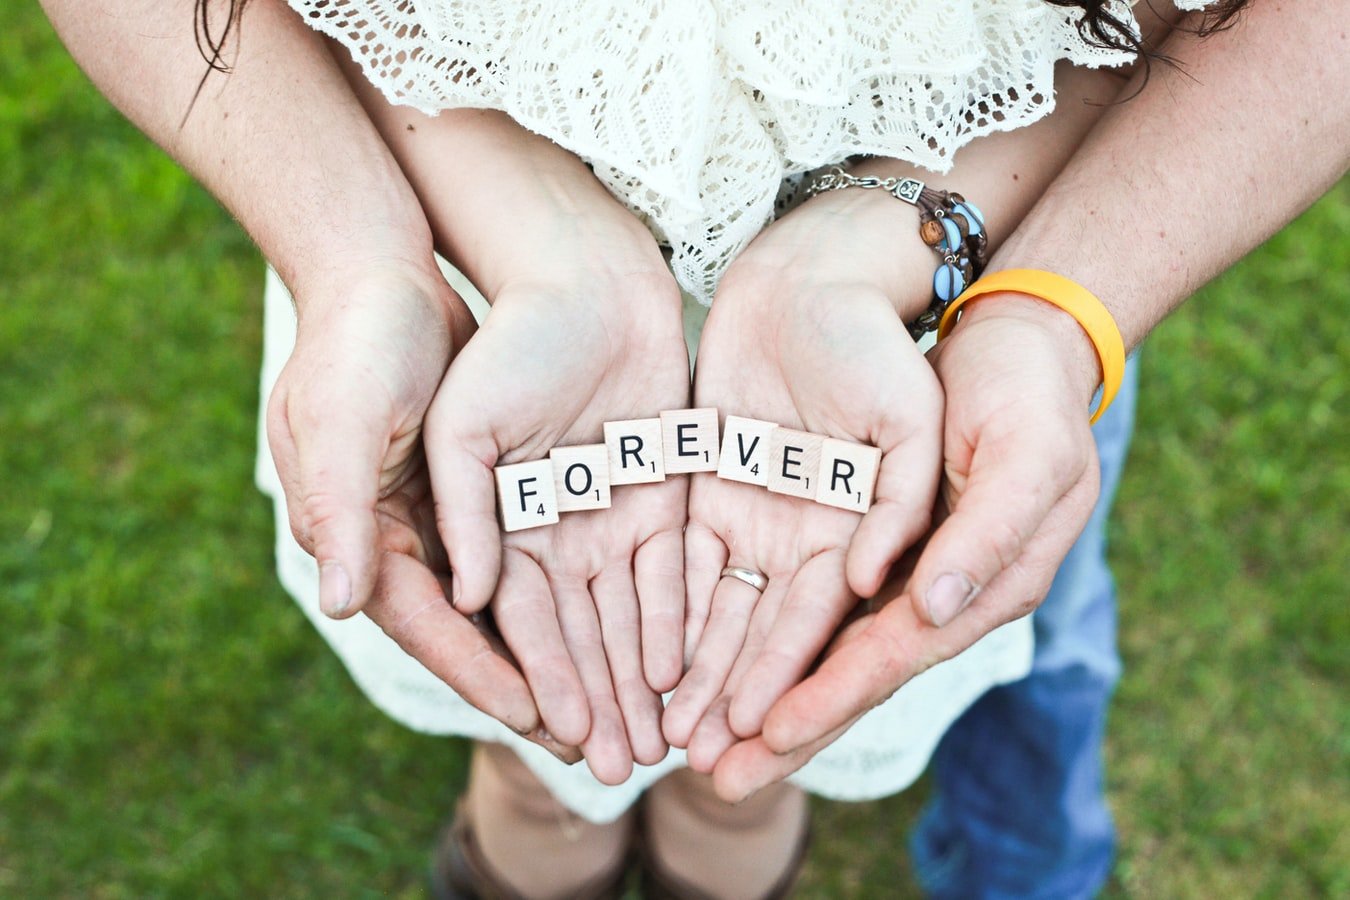 Love forever | Source: Unsplash